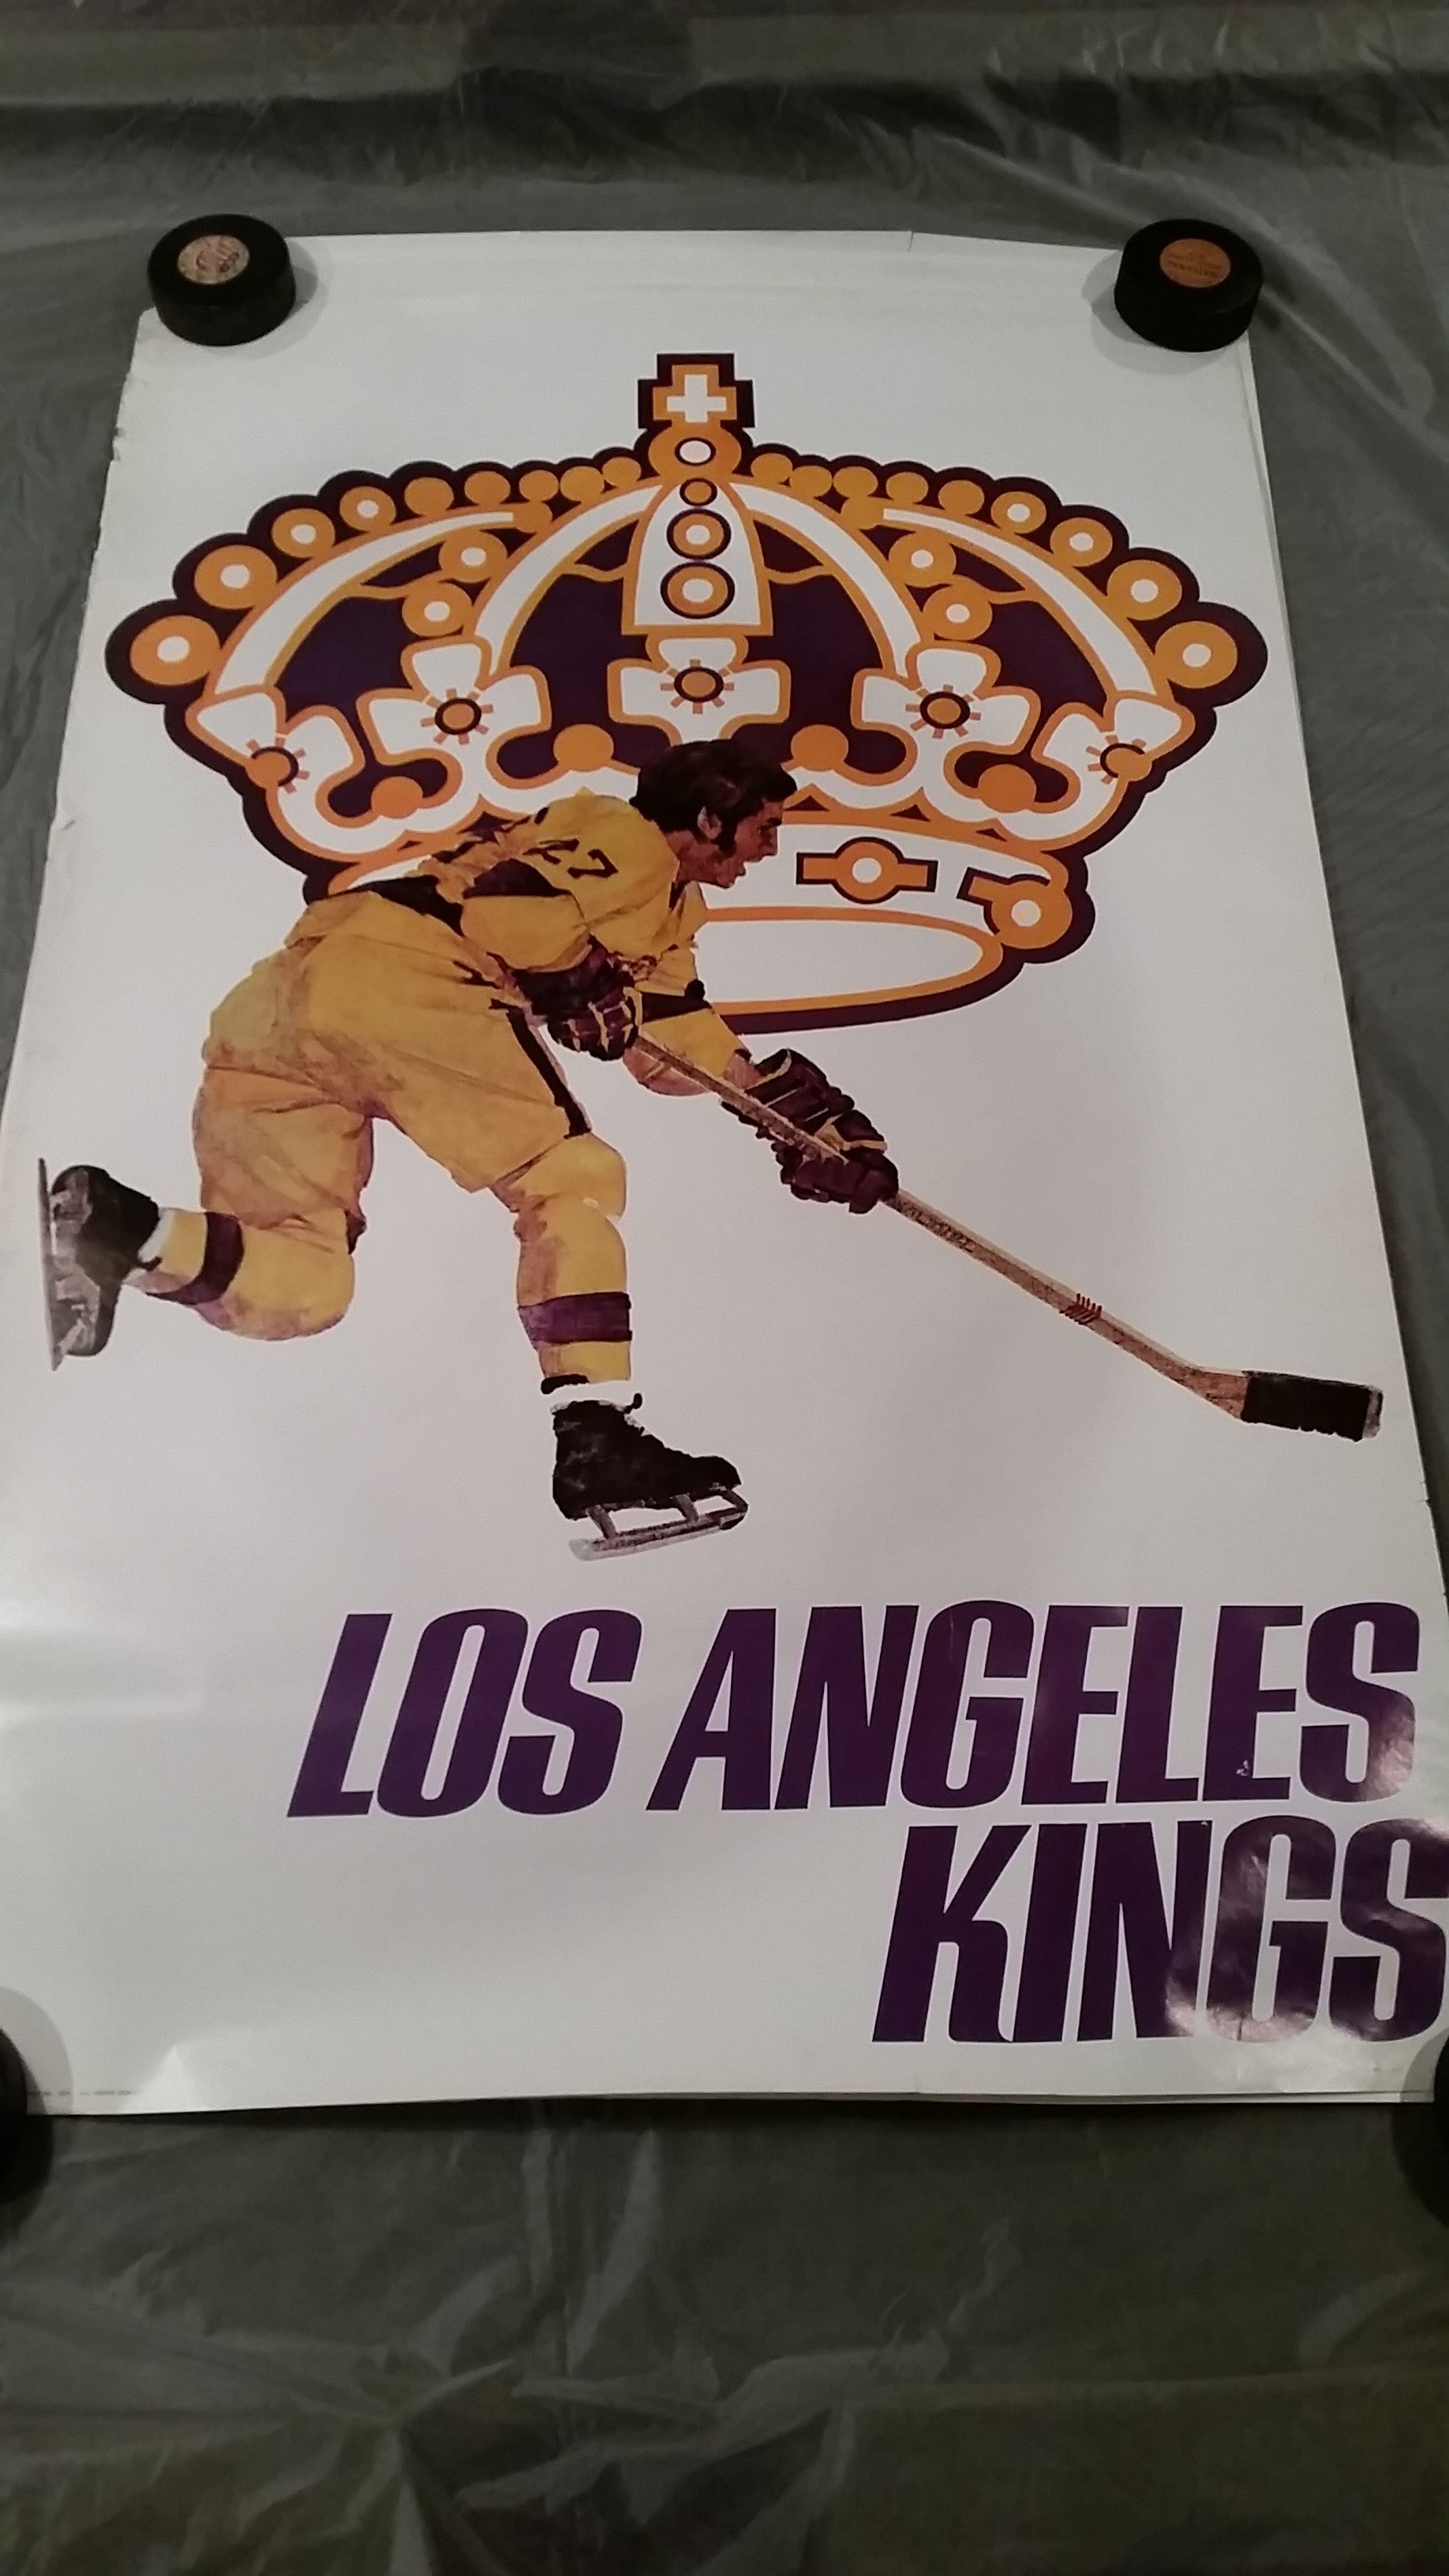 Los Angeles Kings Team Shop in NHL Fan Shop 